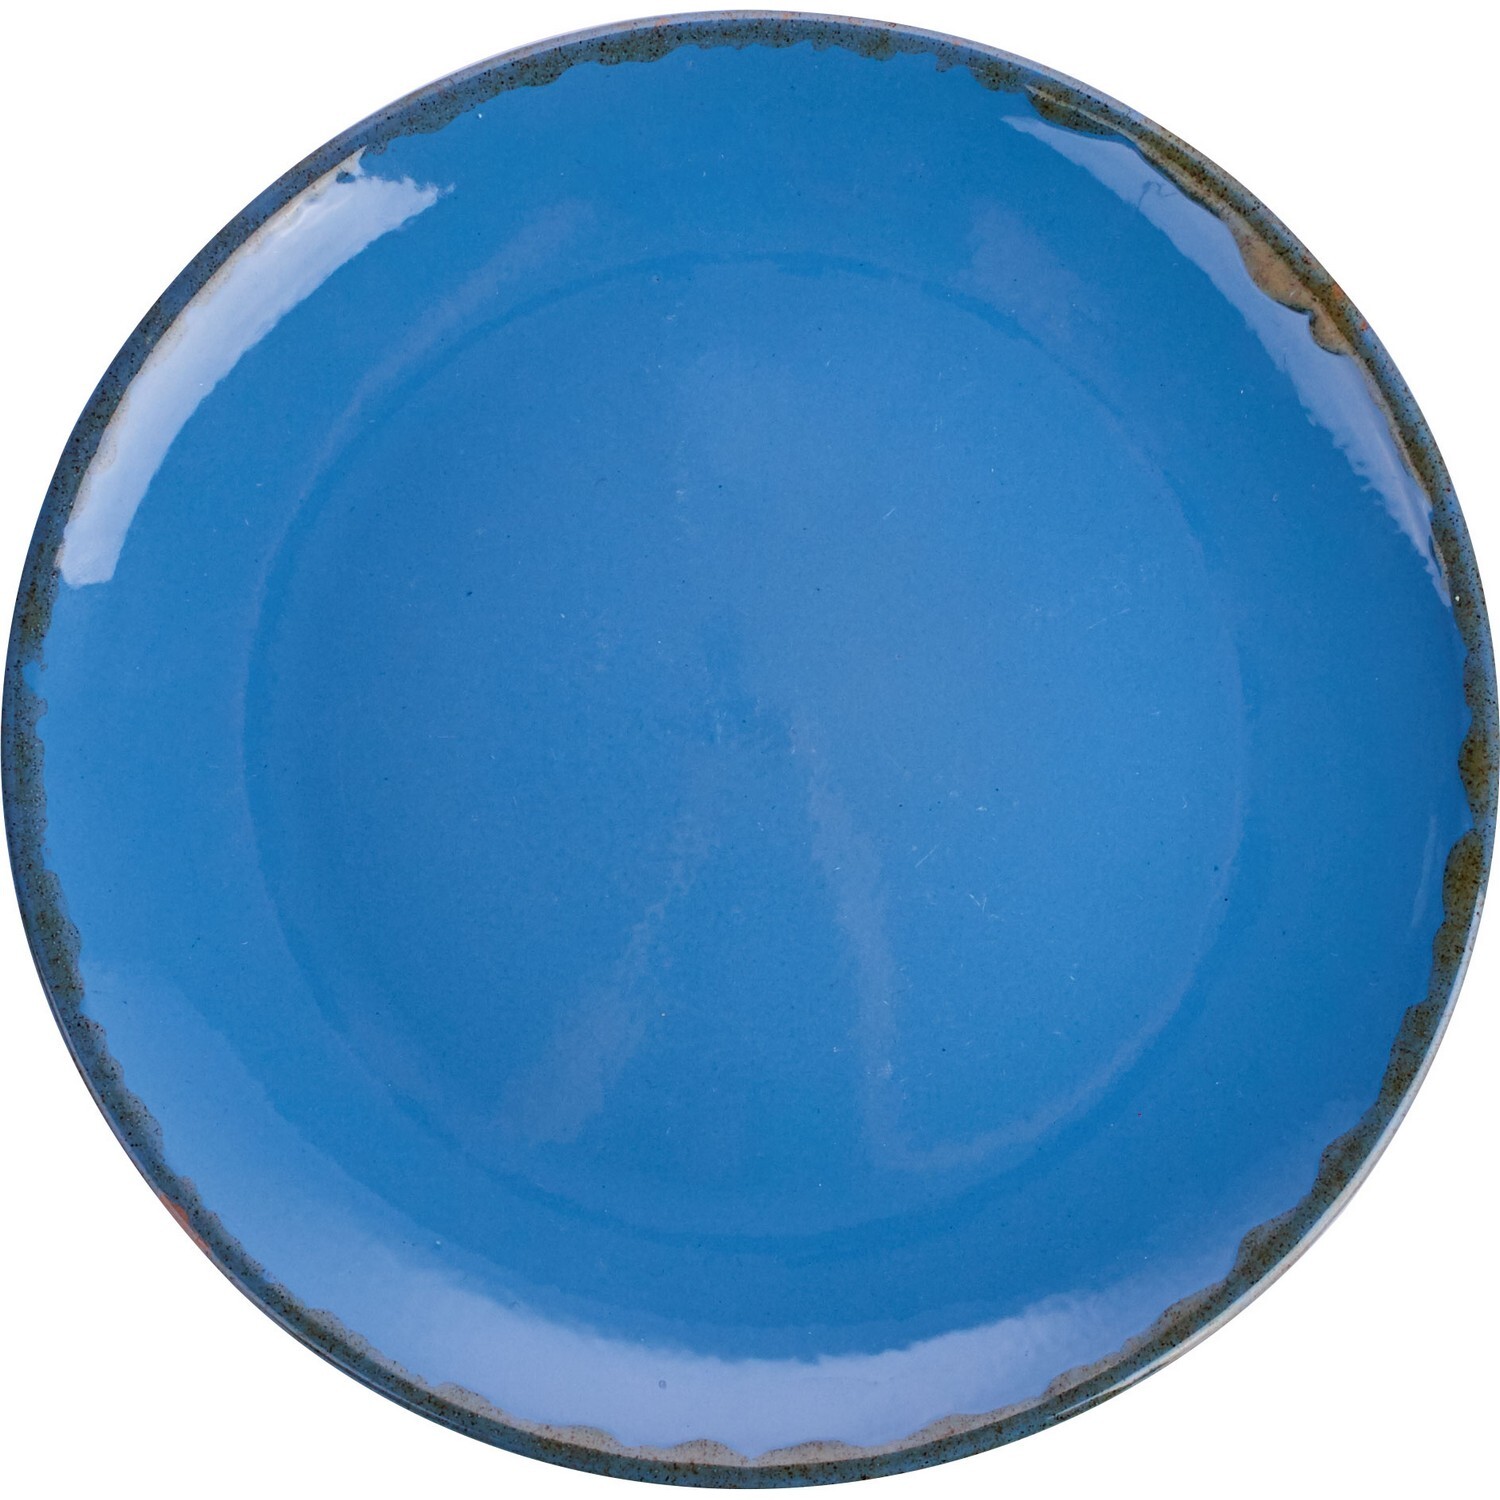 Тарелка борисовская. Борисовская керамика синяя. Синие тарелки Борисовская керамика. Голубая тарелка. Тарелка синяя керамика.